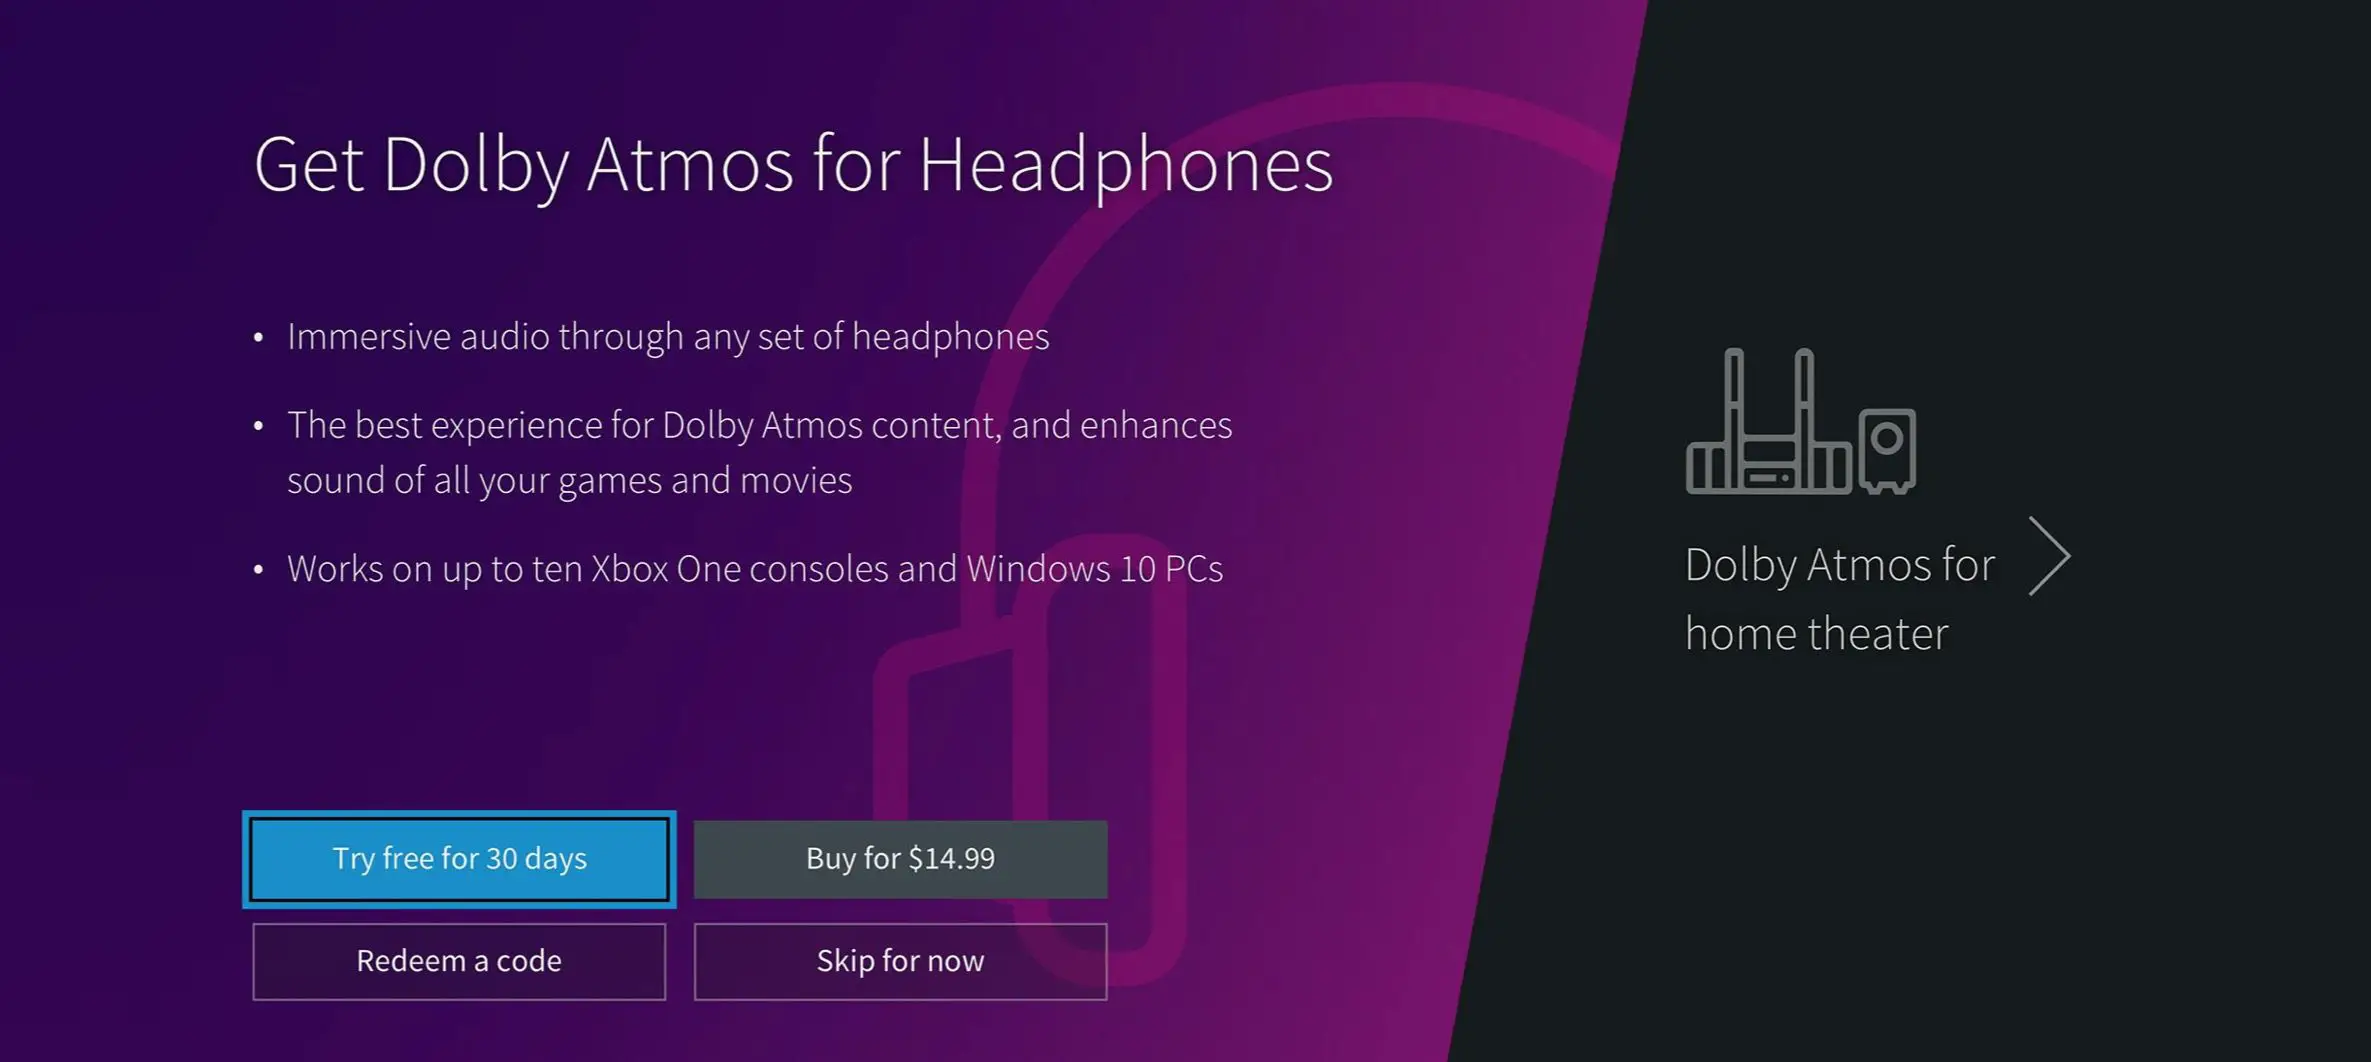 Uma imagem que descreve os benefícios do Dolby Atmos para fones de ouvido